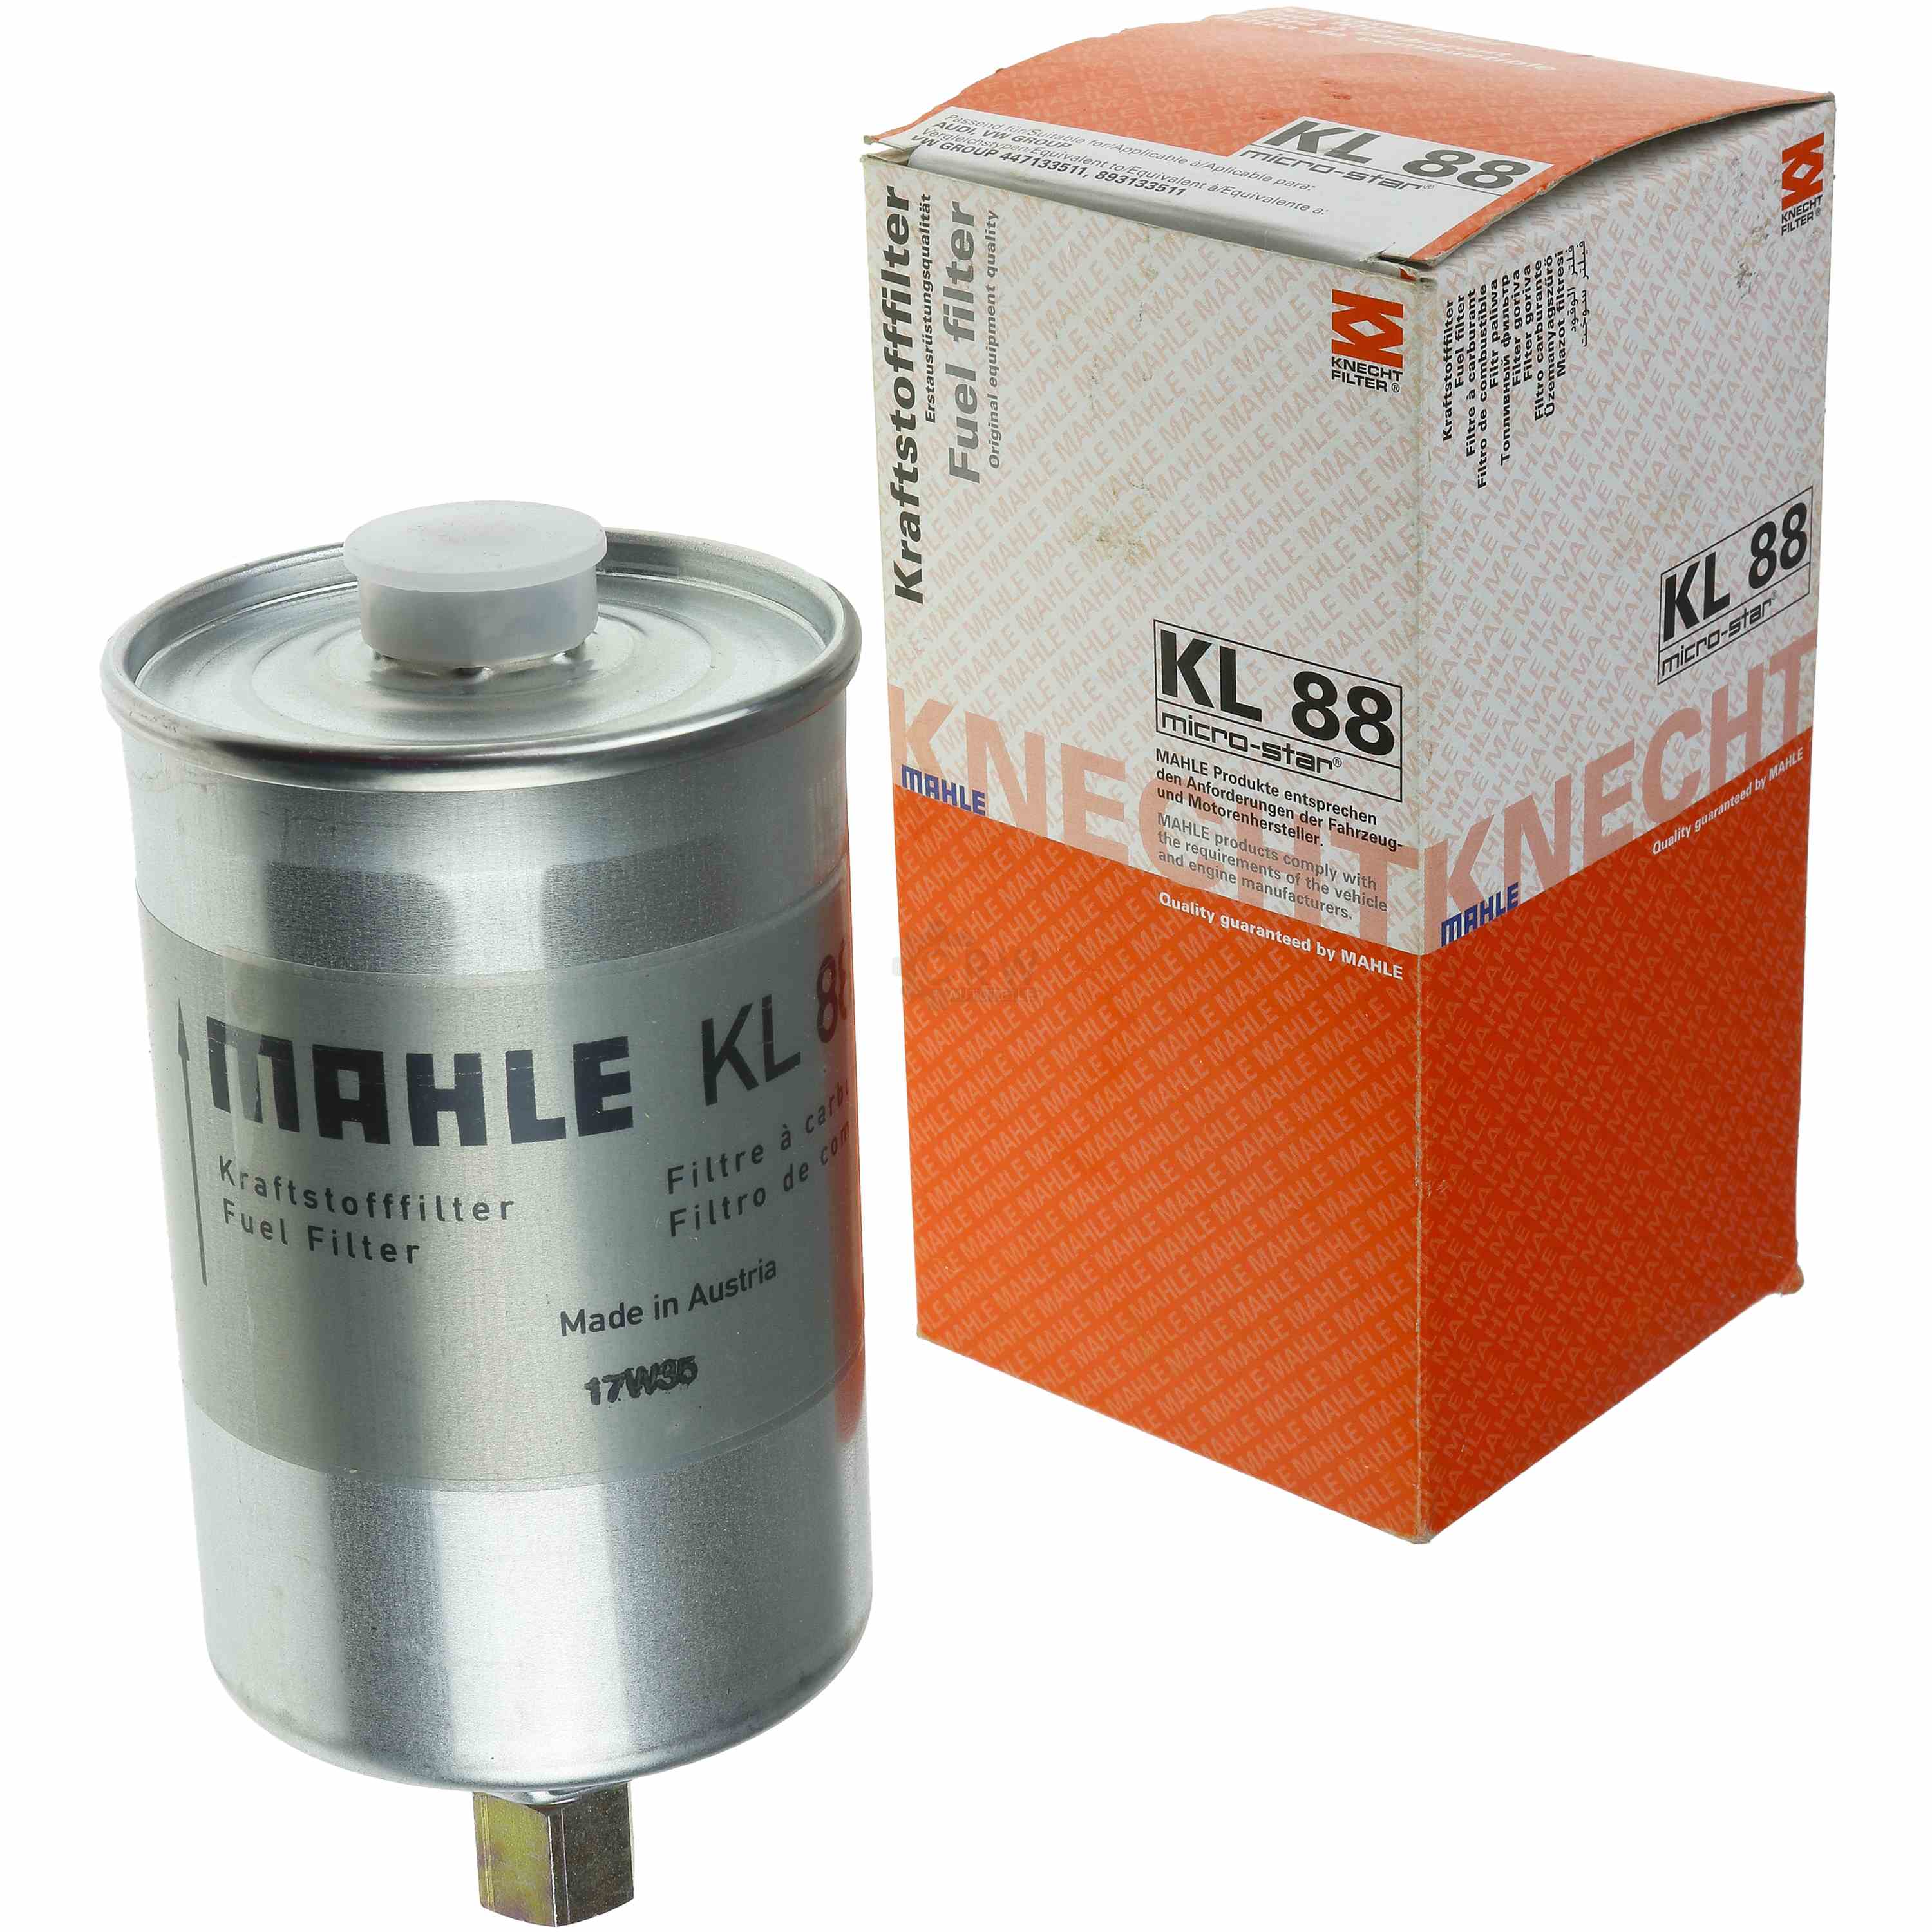 MAHLE Kraftstofffilter KL 88 Fuel Filter